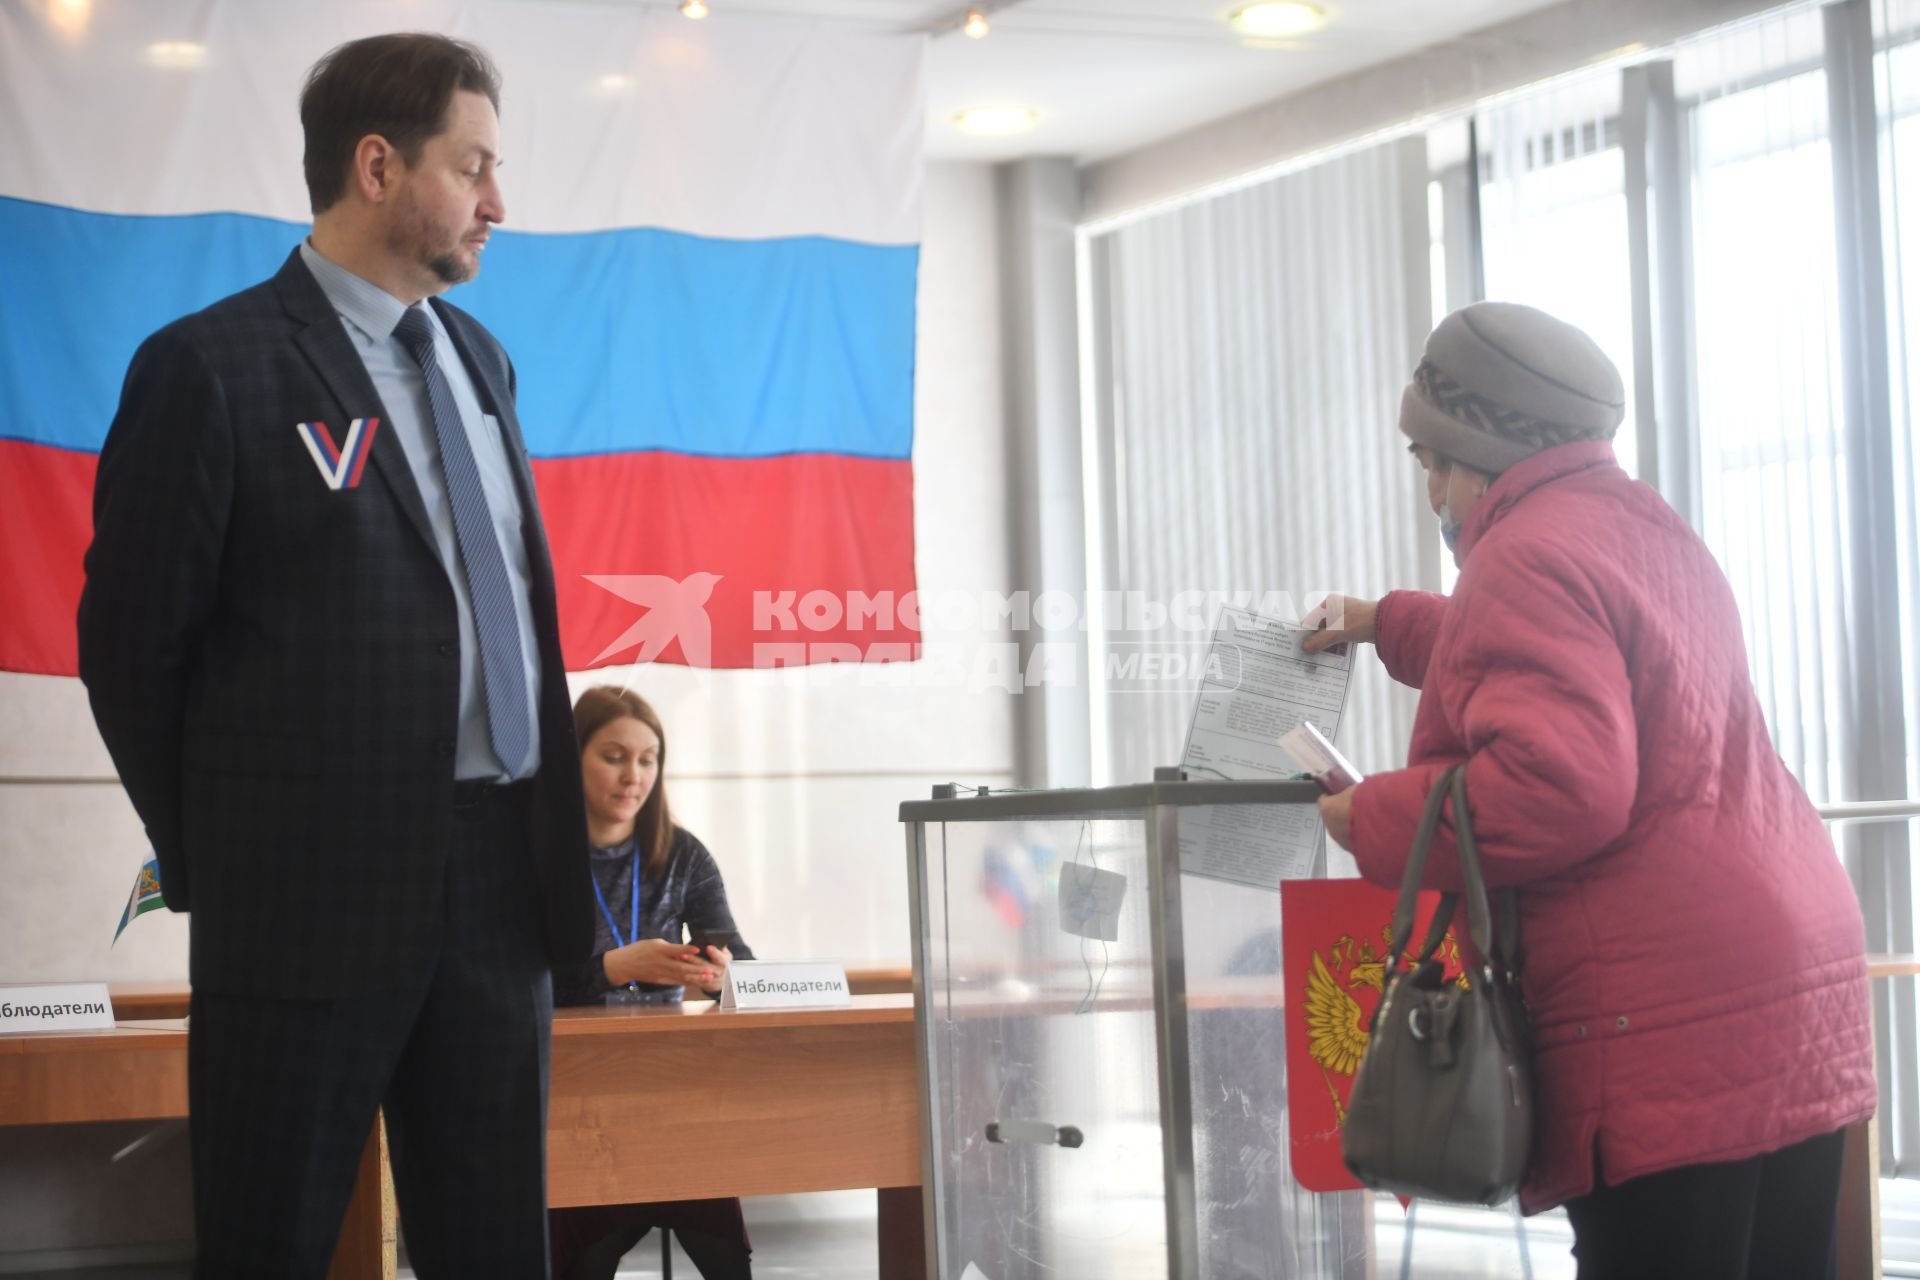 Ход голосования на выборах президента России в Свердловской области